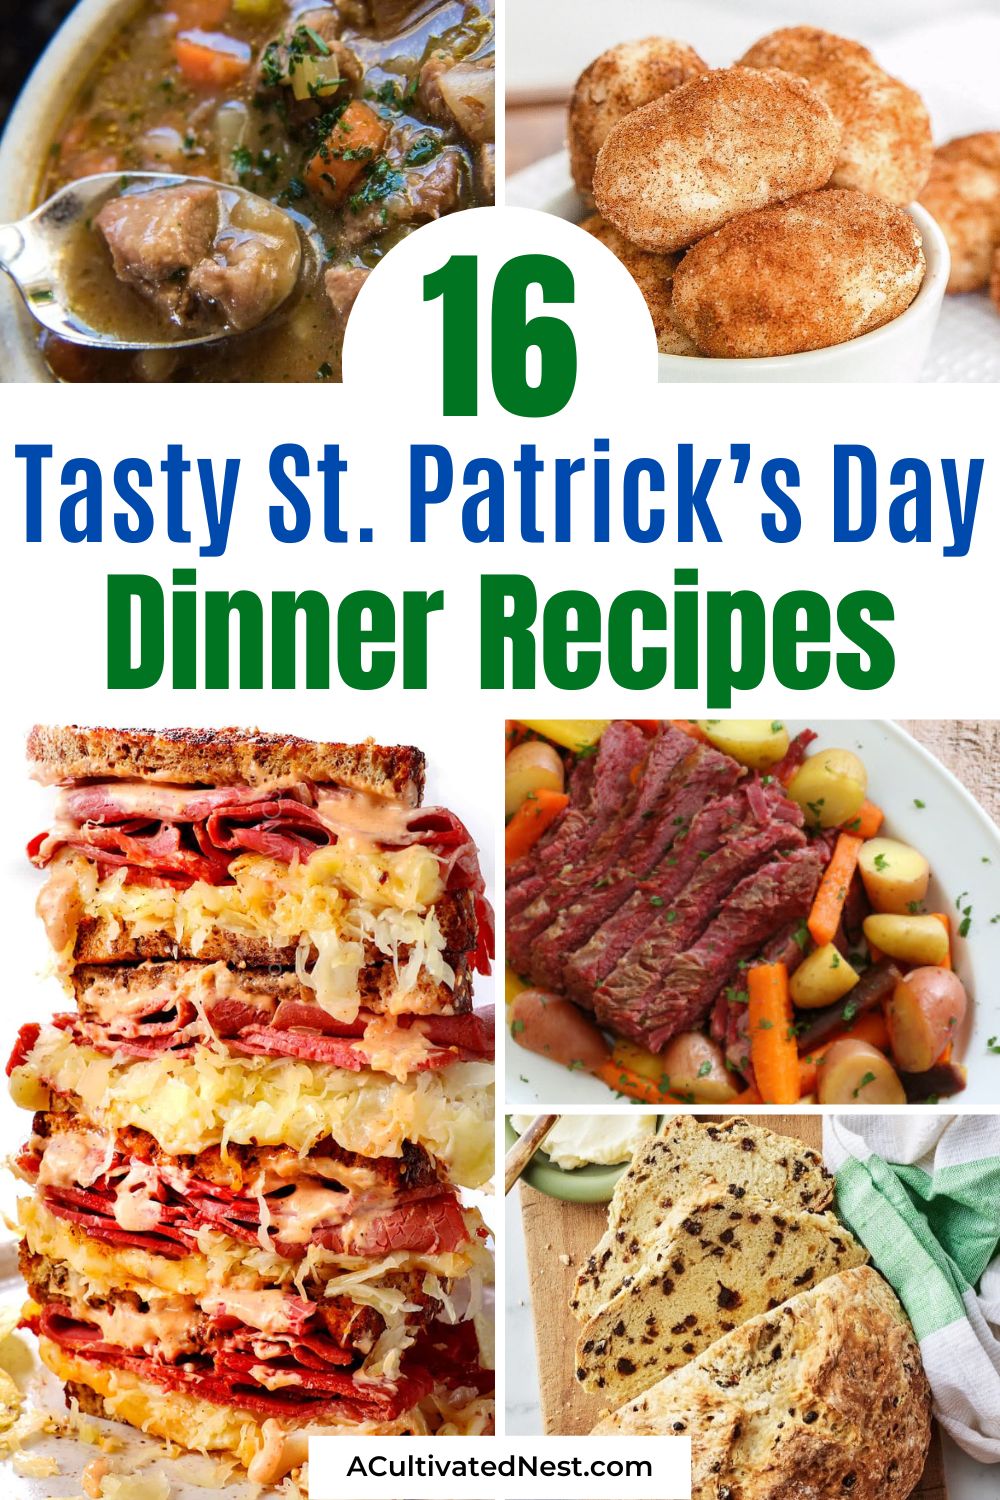 16 Heerlijke St. Patrick's Day-dinerrecepten - Vier St. Patrick's Day in stijl met deze overheerlijke St. Patrick's Day-dinerrecepten!  Van traditionele Ierse stoofschotels tot moderne varianten van klassieke gerechten, proef de smaken van het Smaragdgroene Eiland.  |  #StPatricksDay #DinnerRecipes #StPattysDay #recipeIdeas #ACultivatedNest